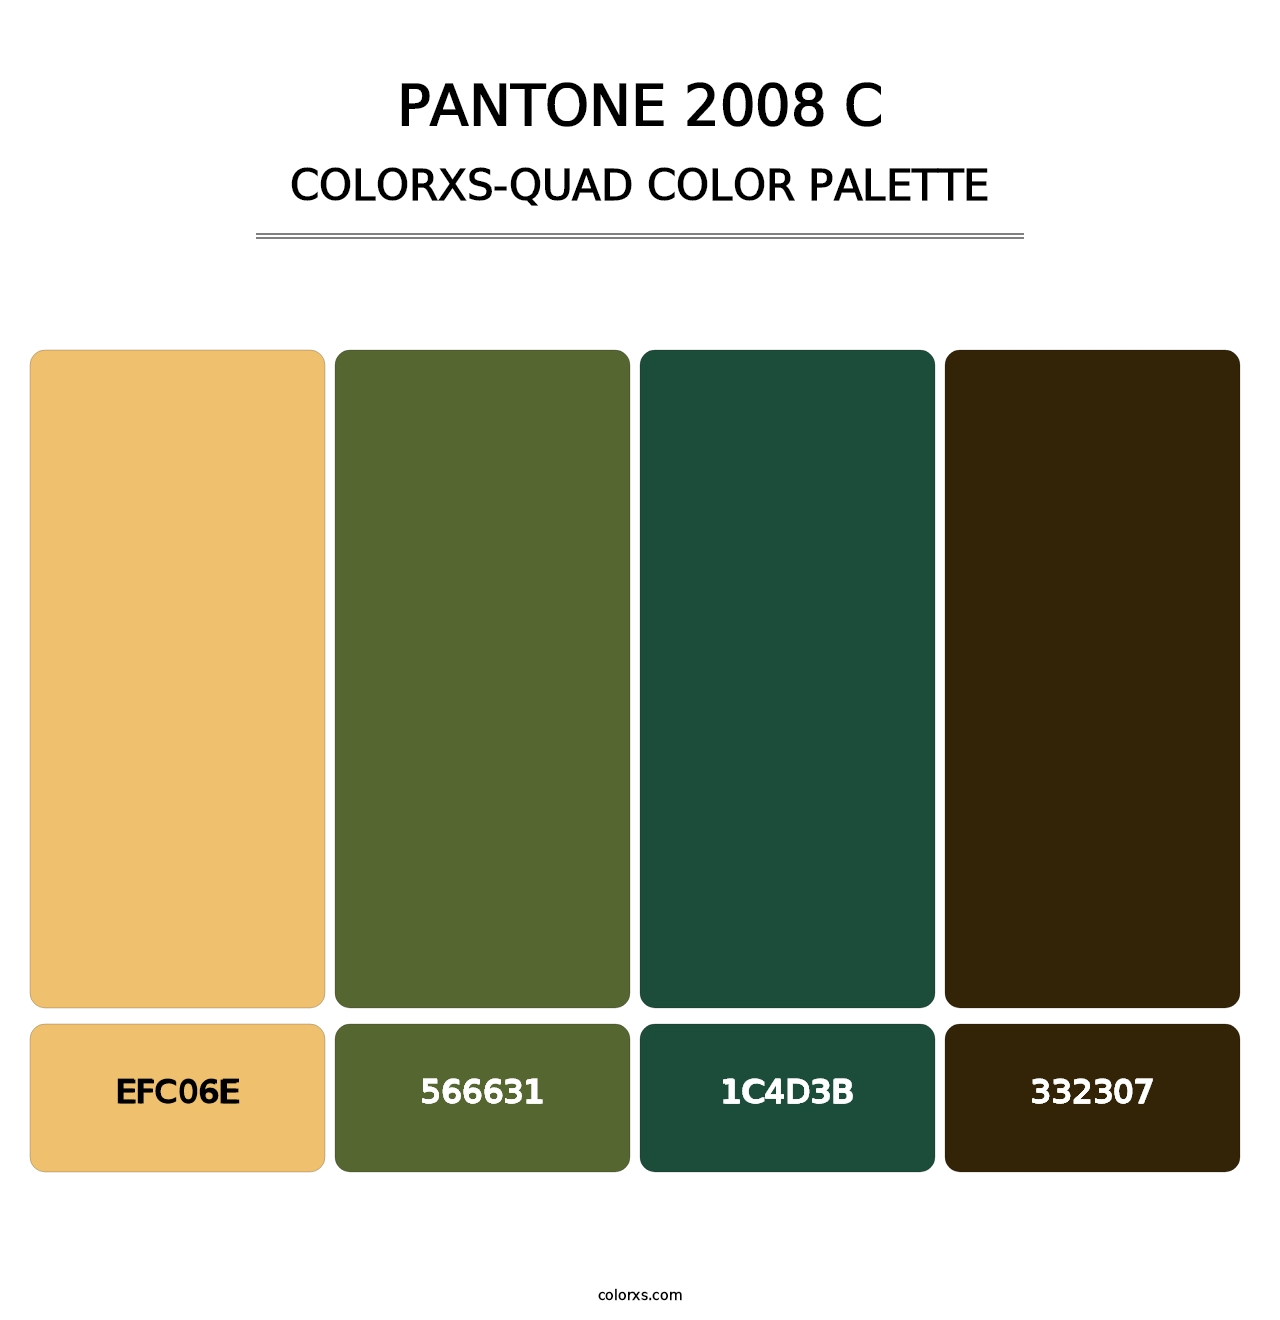 PANTONE 2008 C - Colorxs Quad Palette